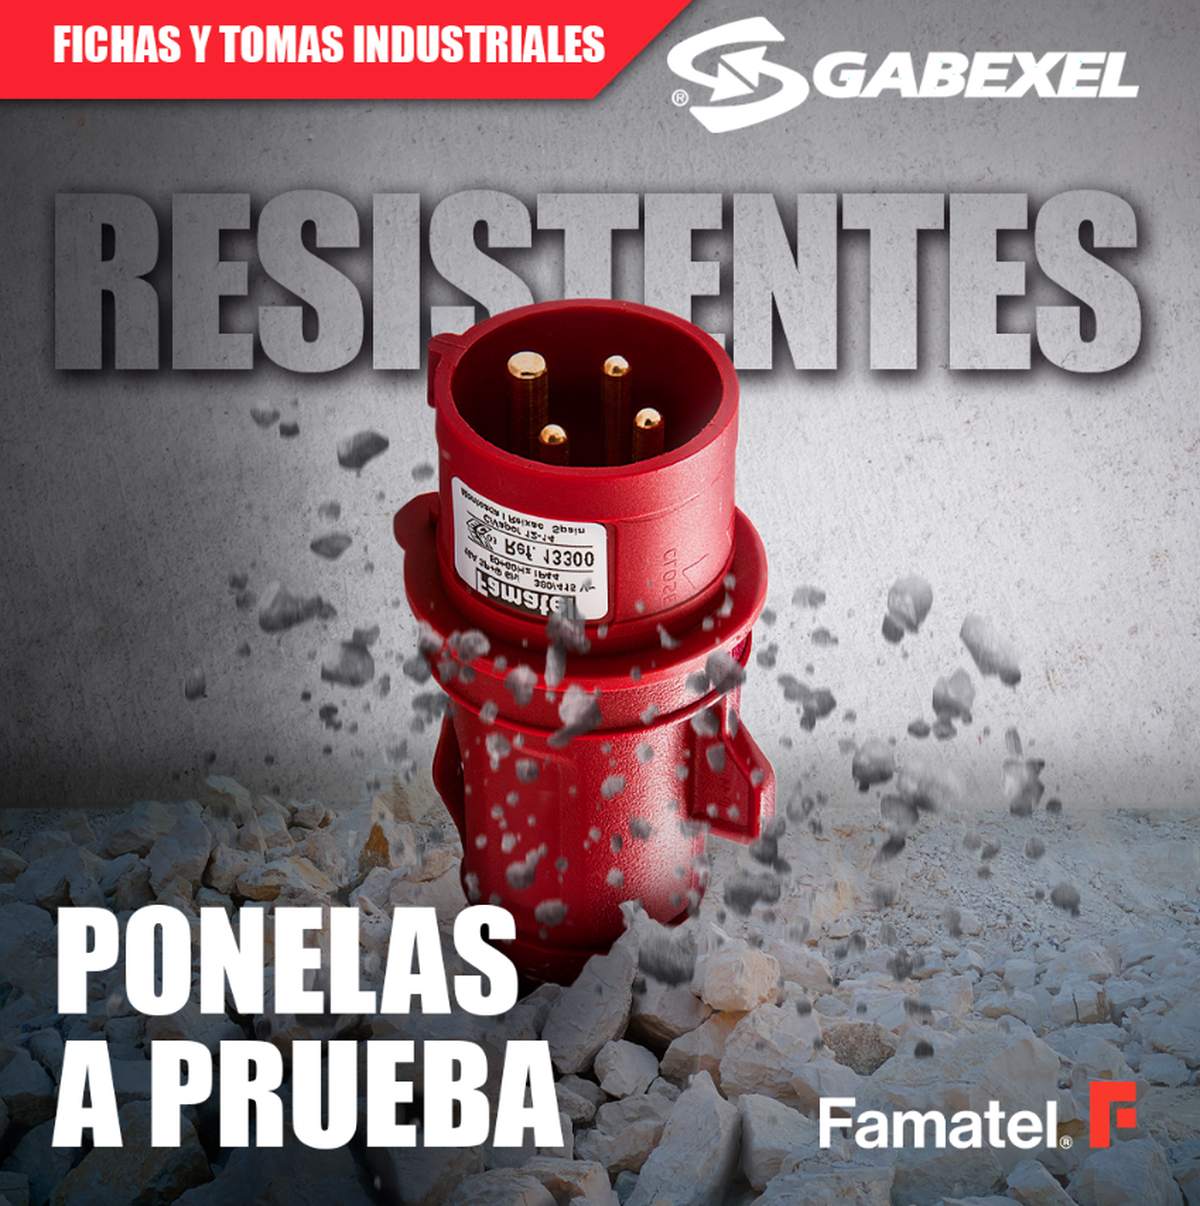 Fichas y tomas industriales Famatel - Gabexel